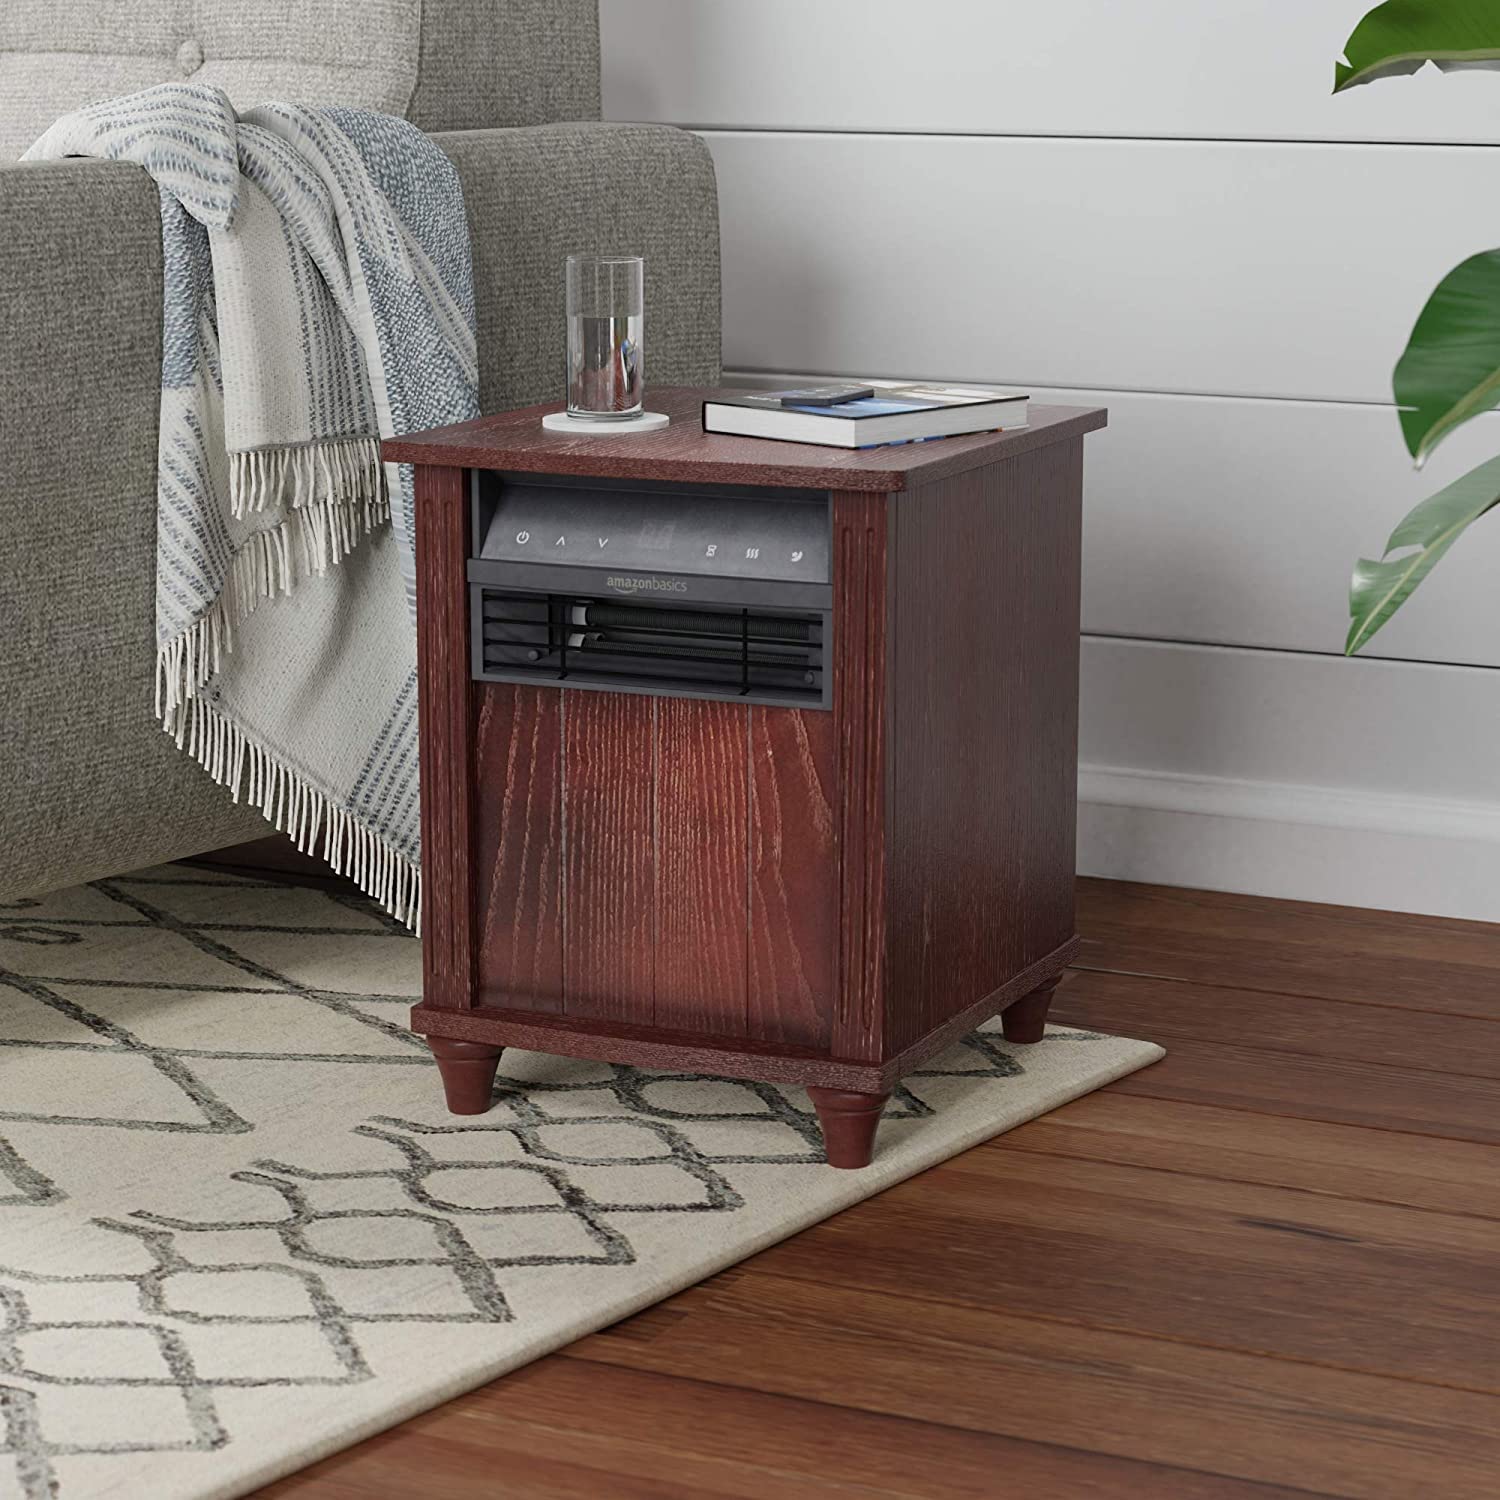 Amazon Basics Cabinet Style Space Heater